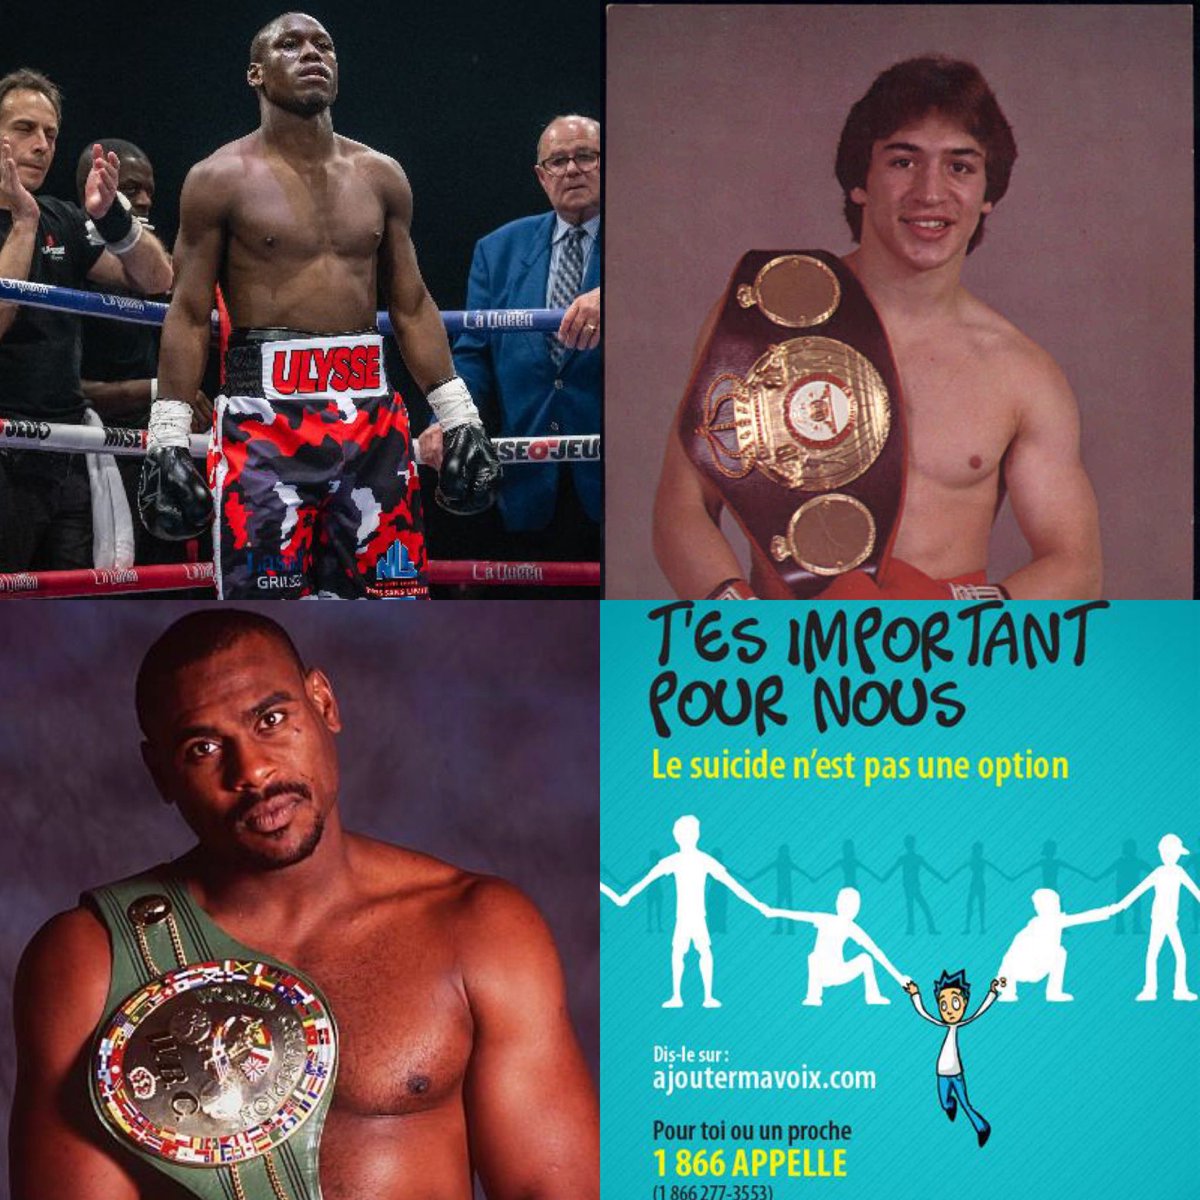 Vers 17:17 ce soir au Champ de Bataille de @JiCLajoie à @jic_tvasports on a des nouvelles d’Yves Ulysse Jr et on discute de la semaine de la prévention du suicide chez nos pugilistes @TVASports . À bientôt! #boxe #boxing #boxeo #Ulysse #Preventionsuicide #boxer #boxingnews